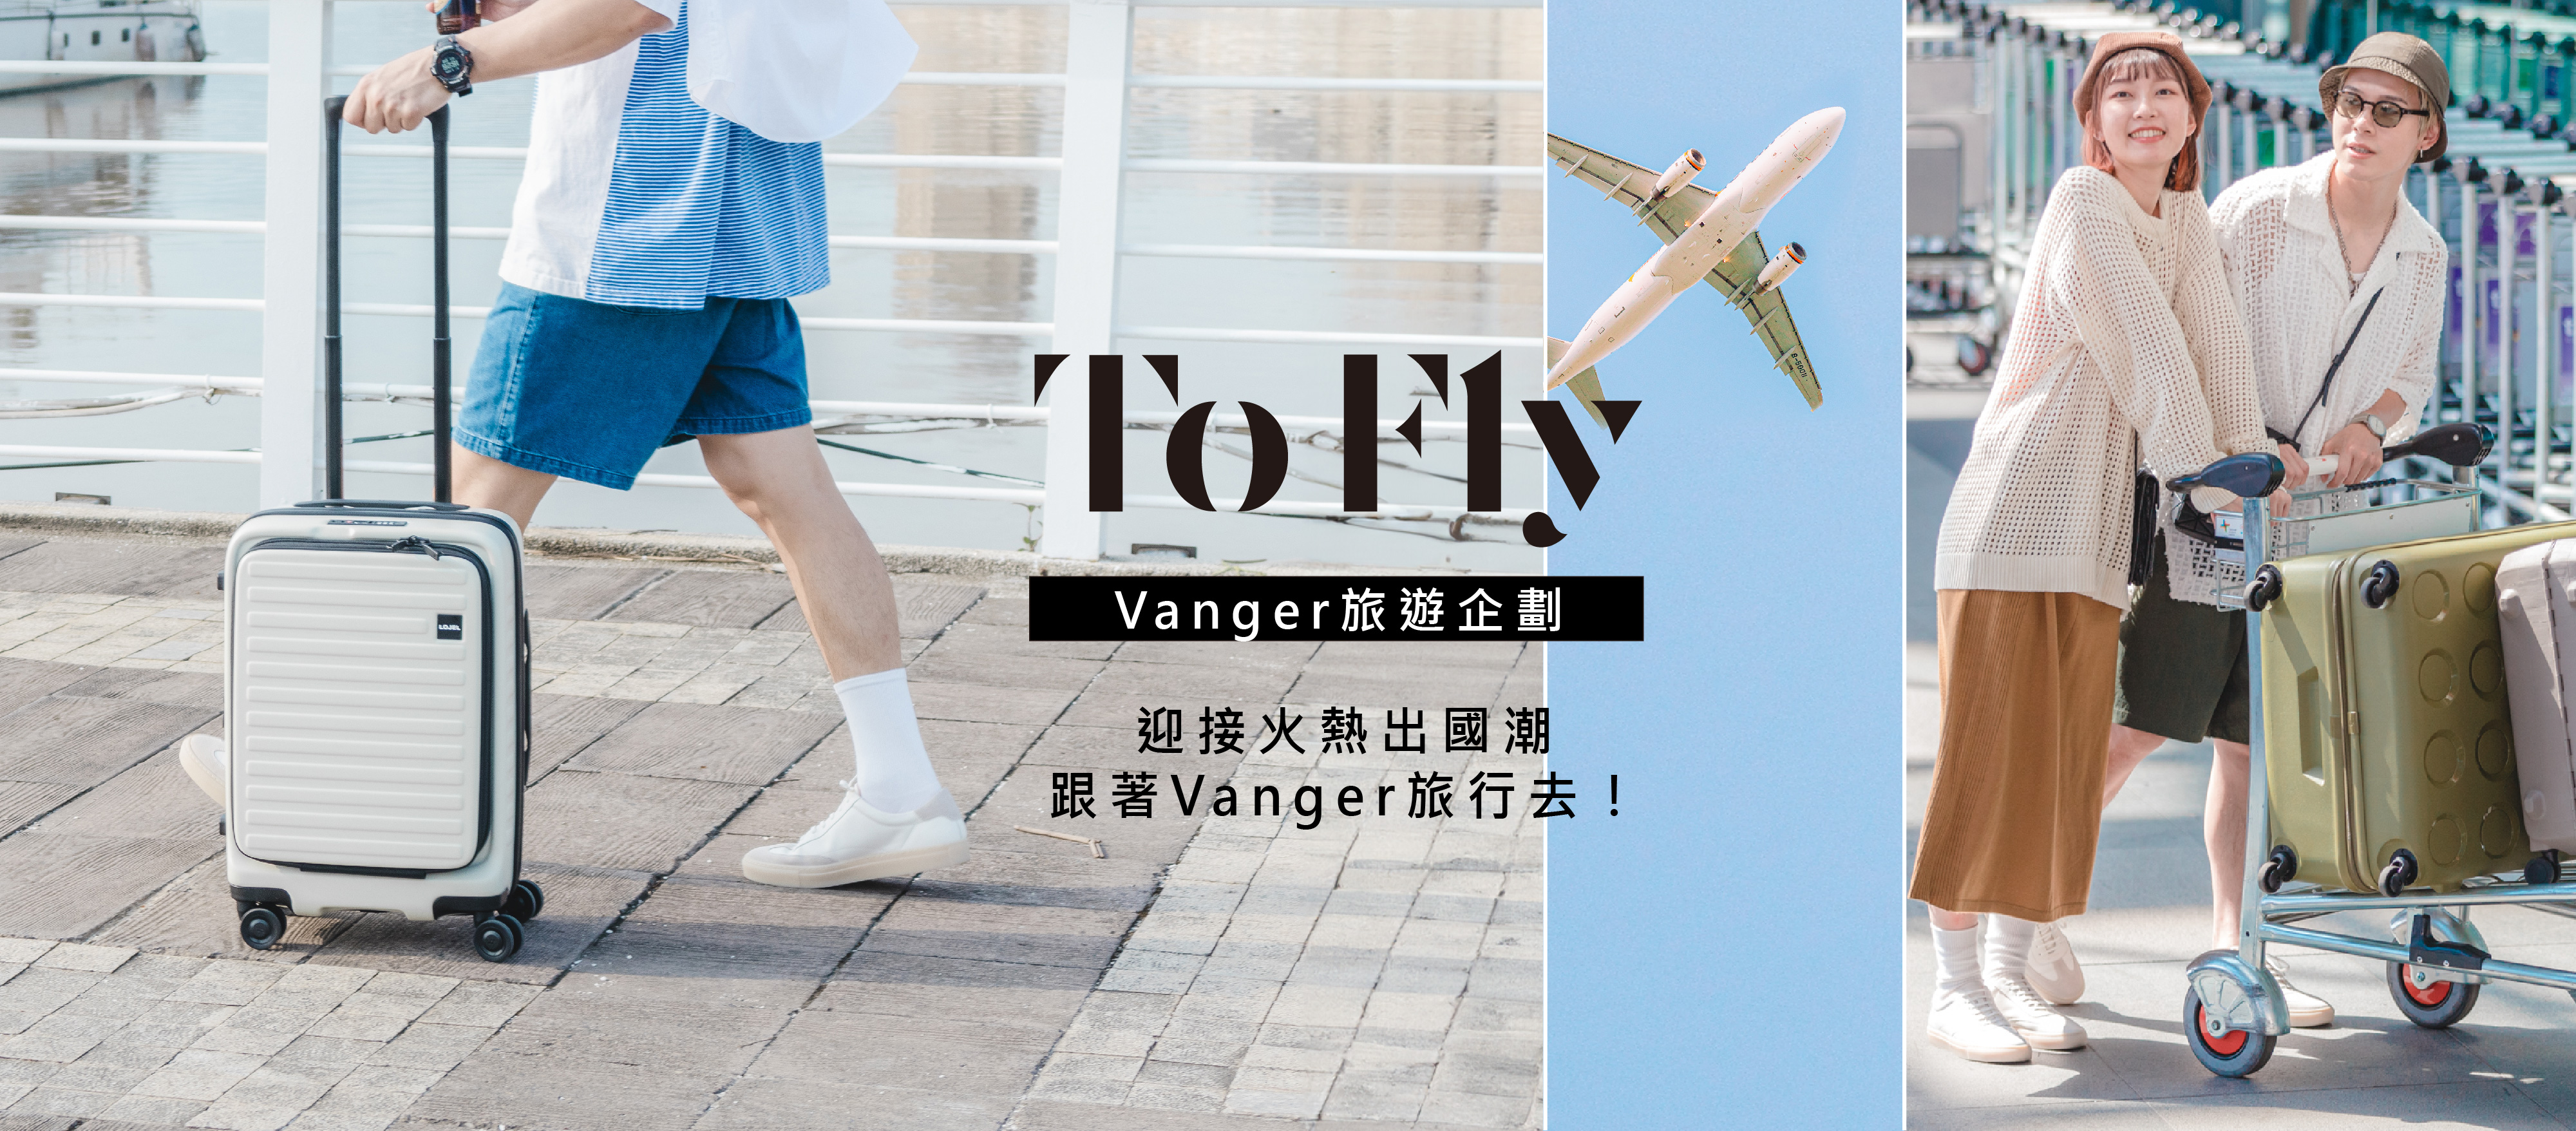 Vanger Tofly project